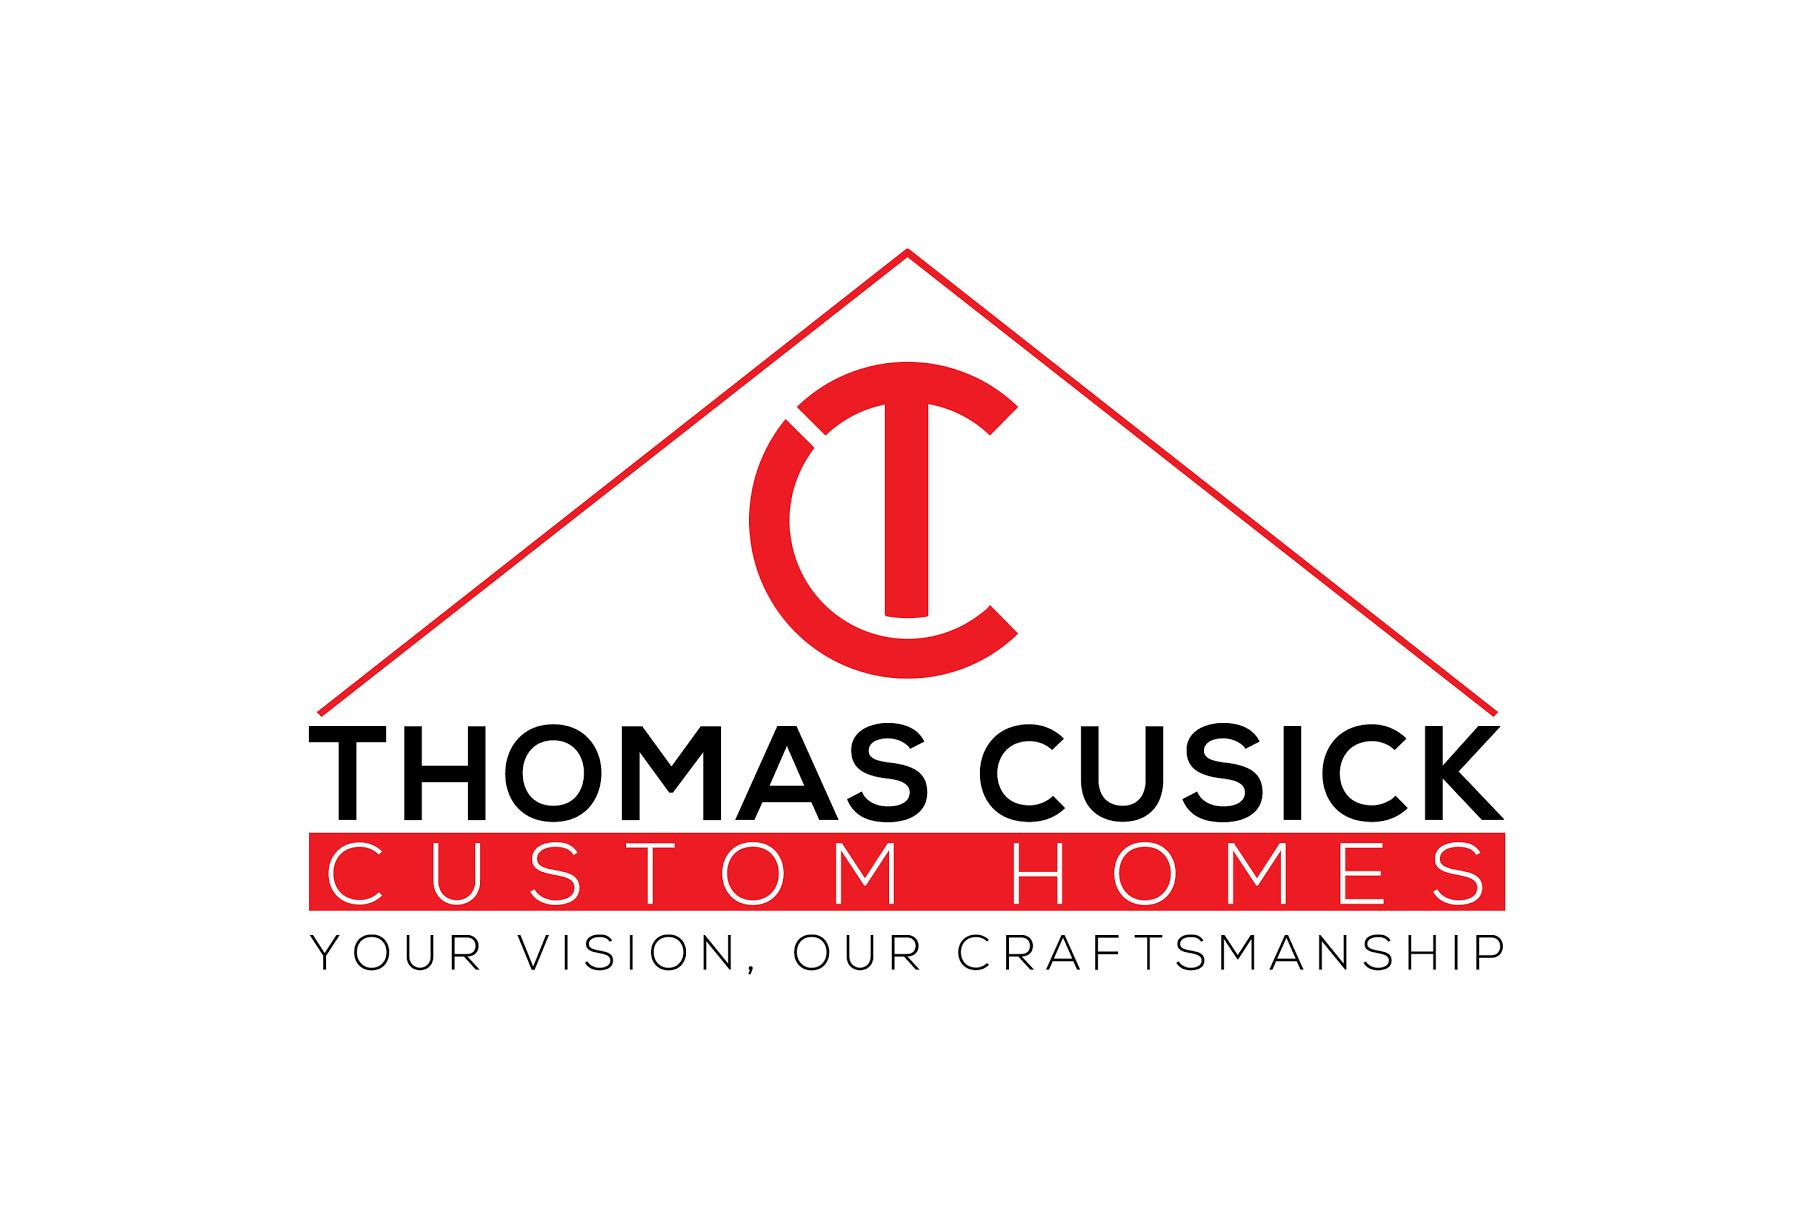 Thomas Cusick Custom Homes